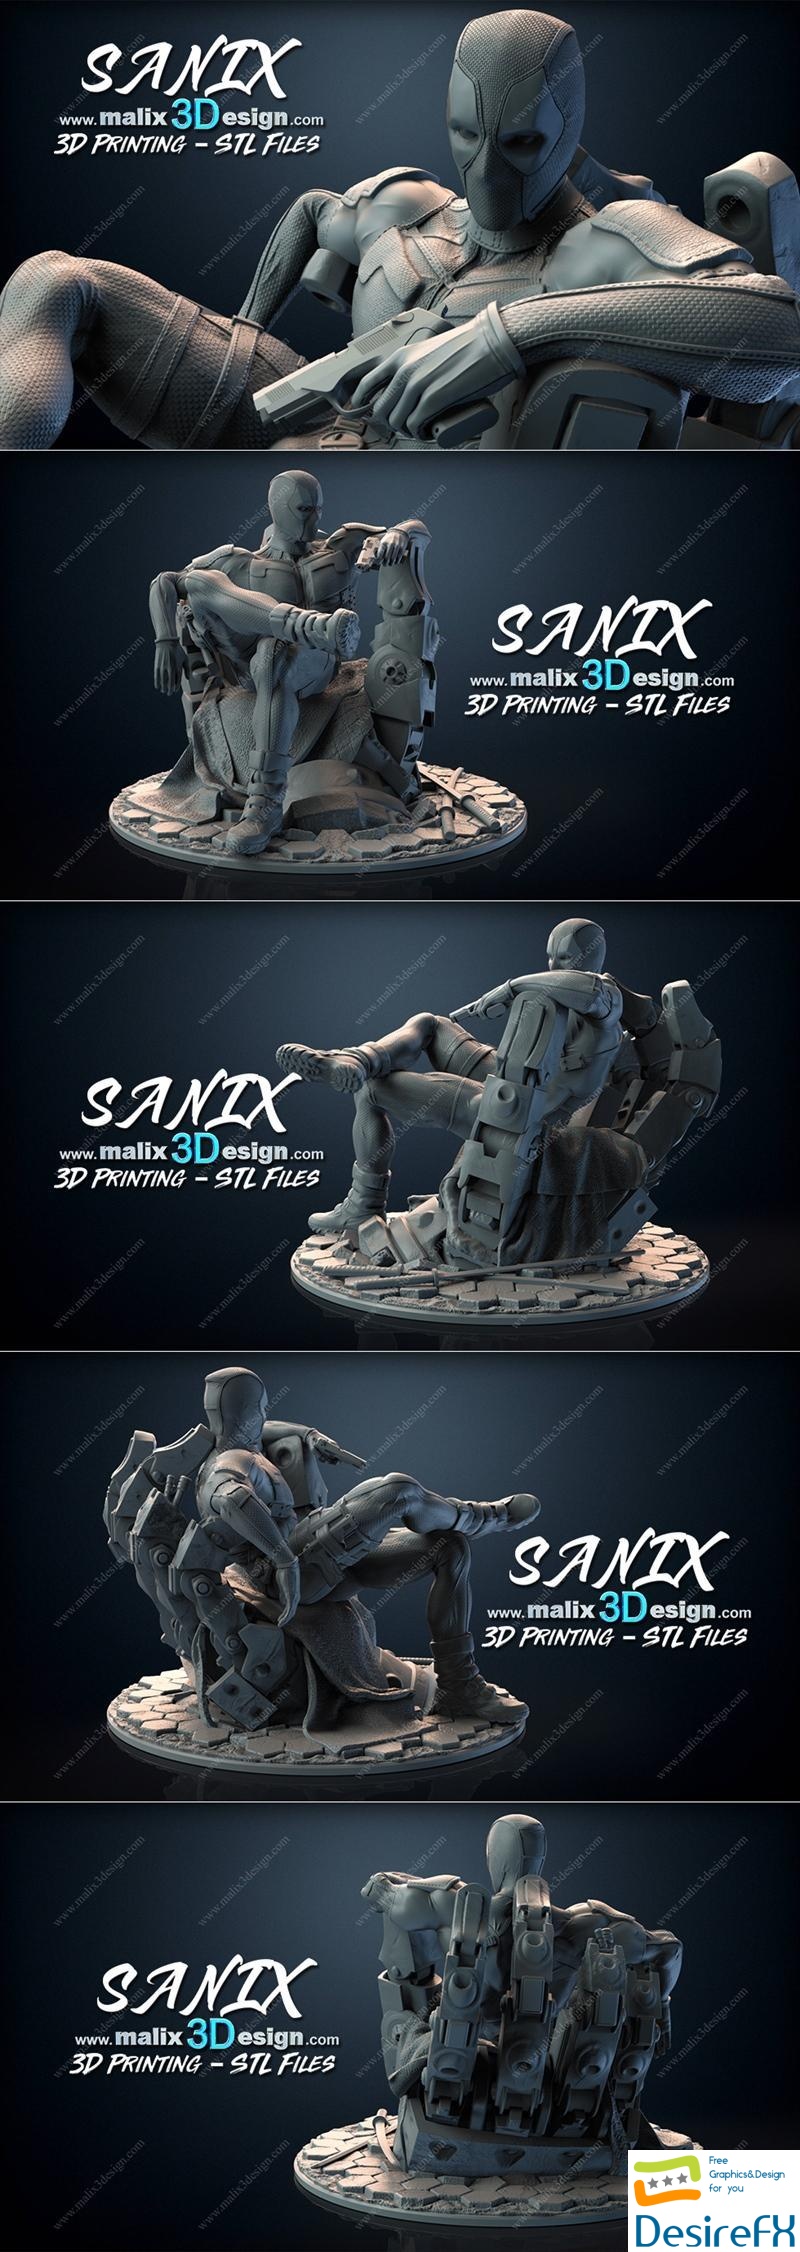 Sanix - Deadpool 3D Print